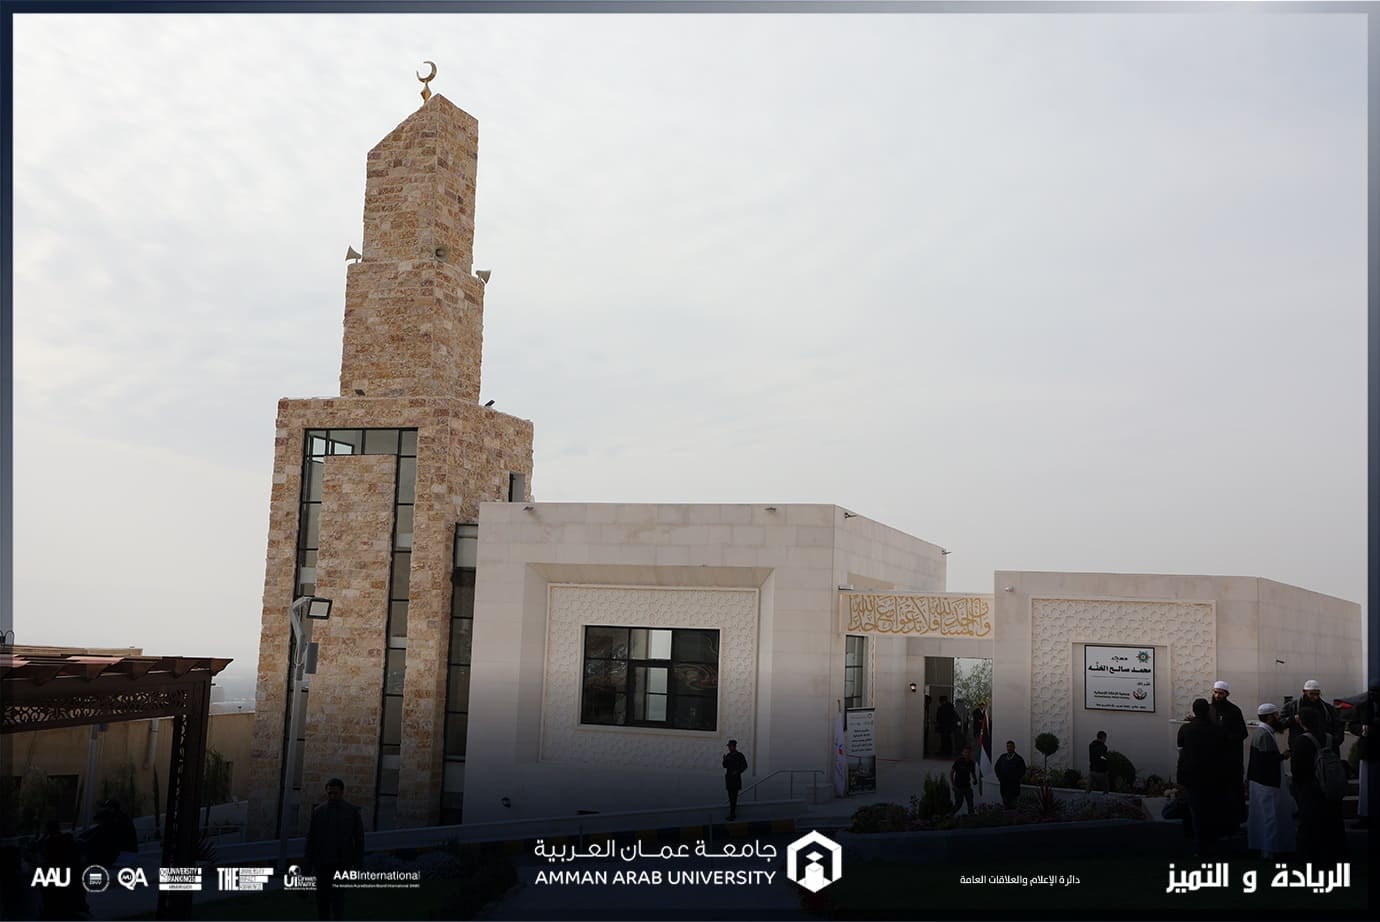 مسجد جامعة عمان العربية يرى النور